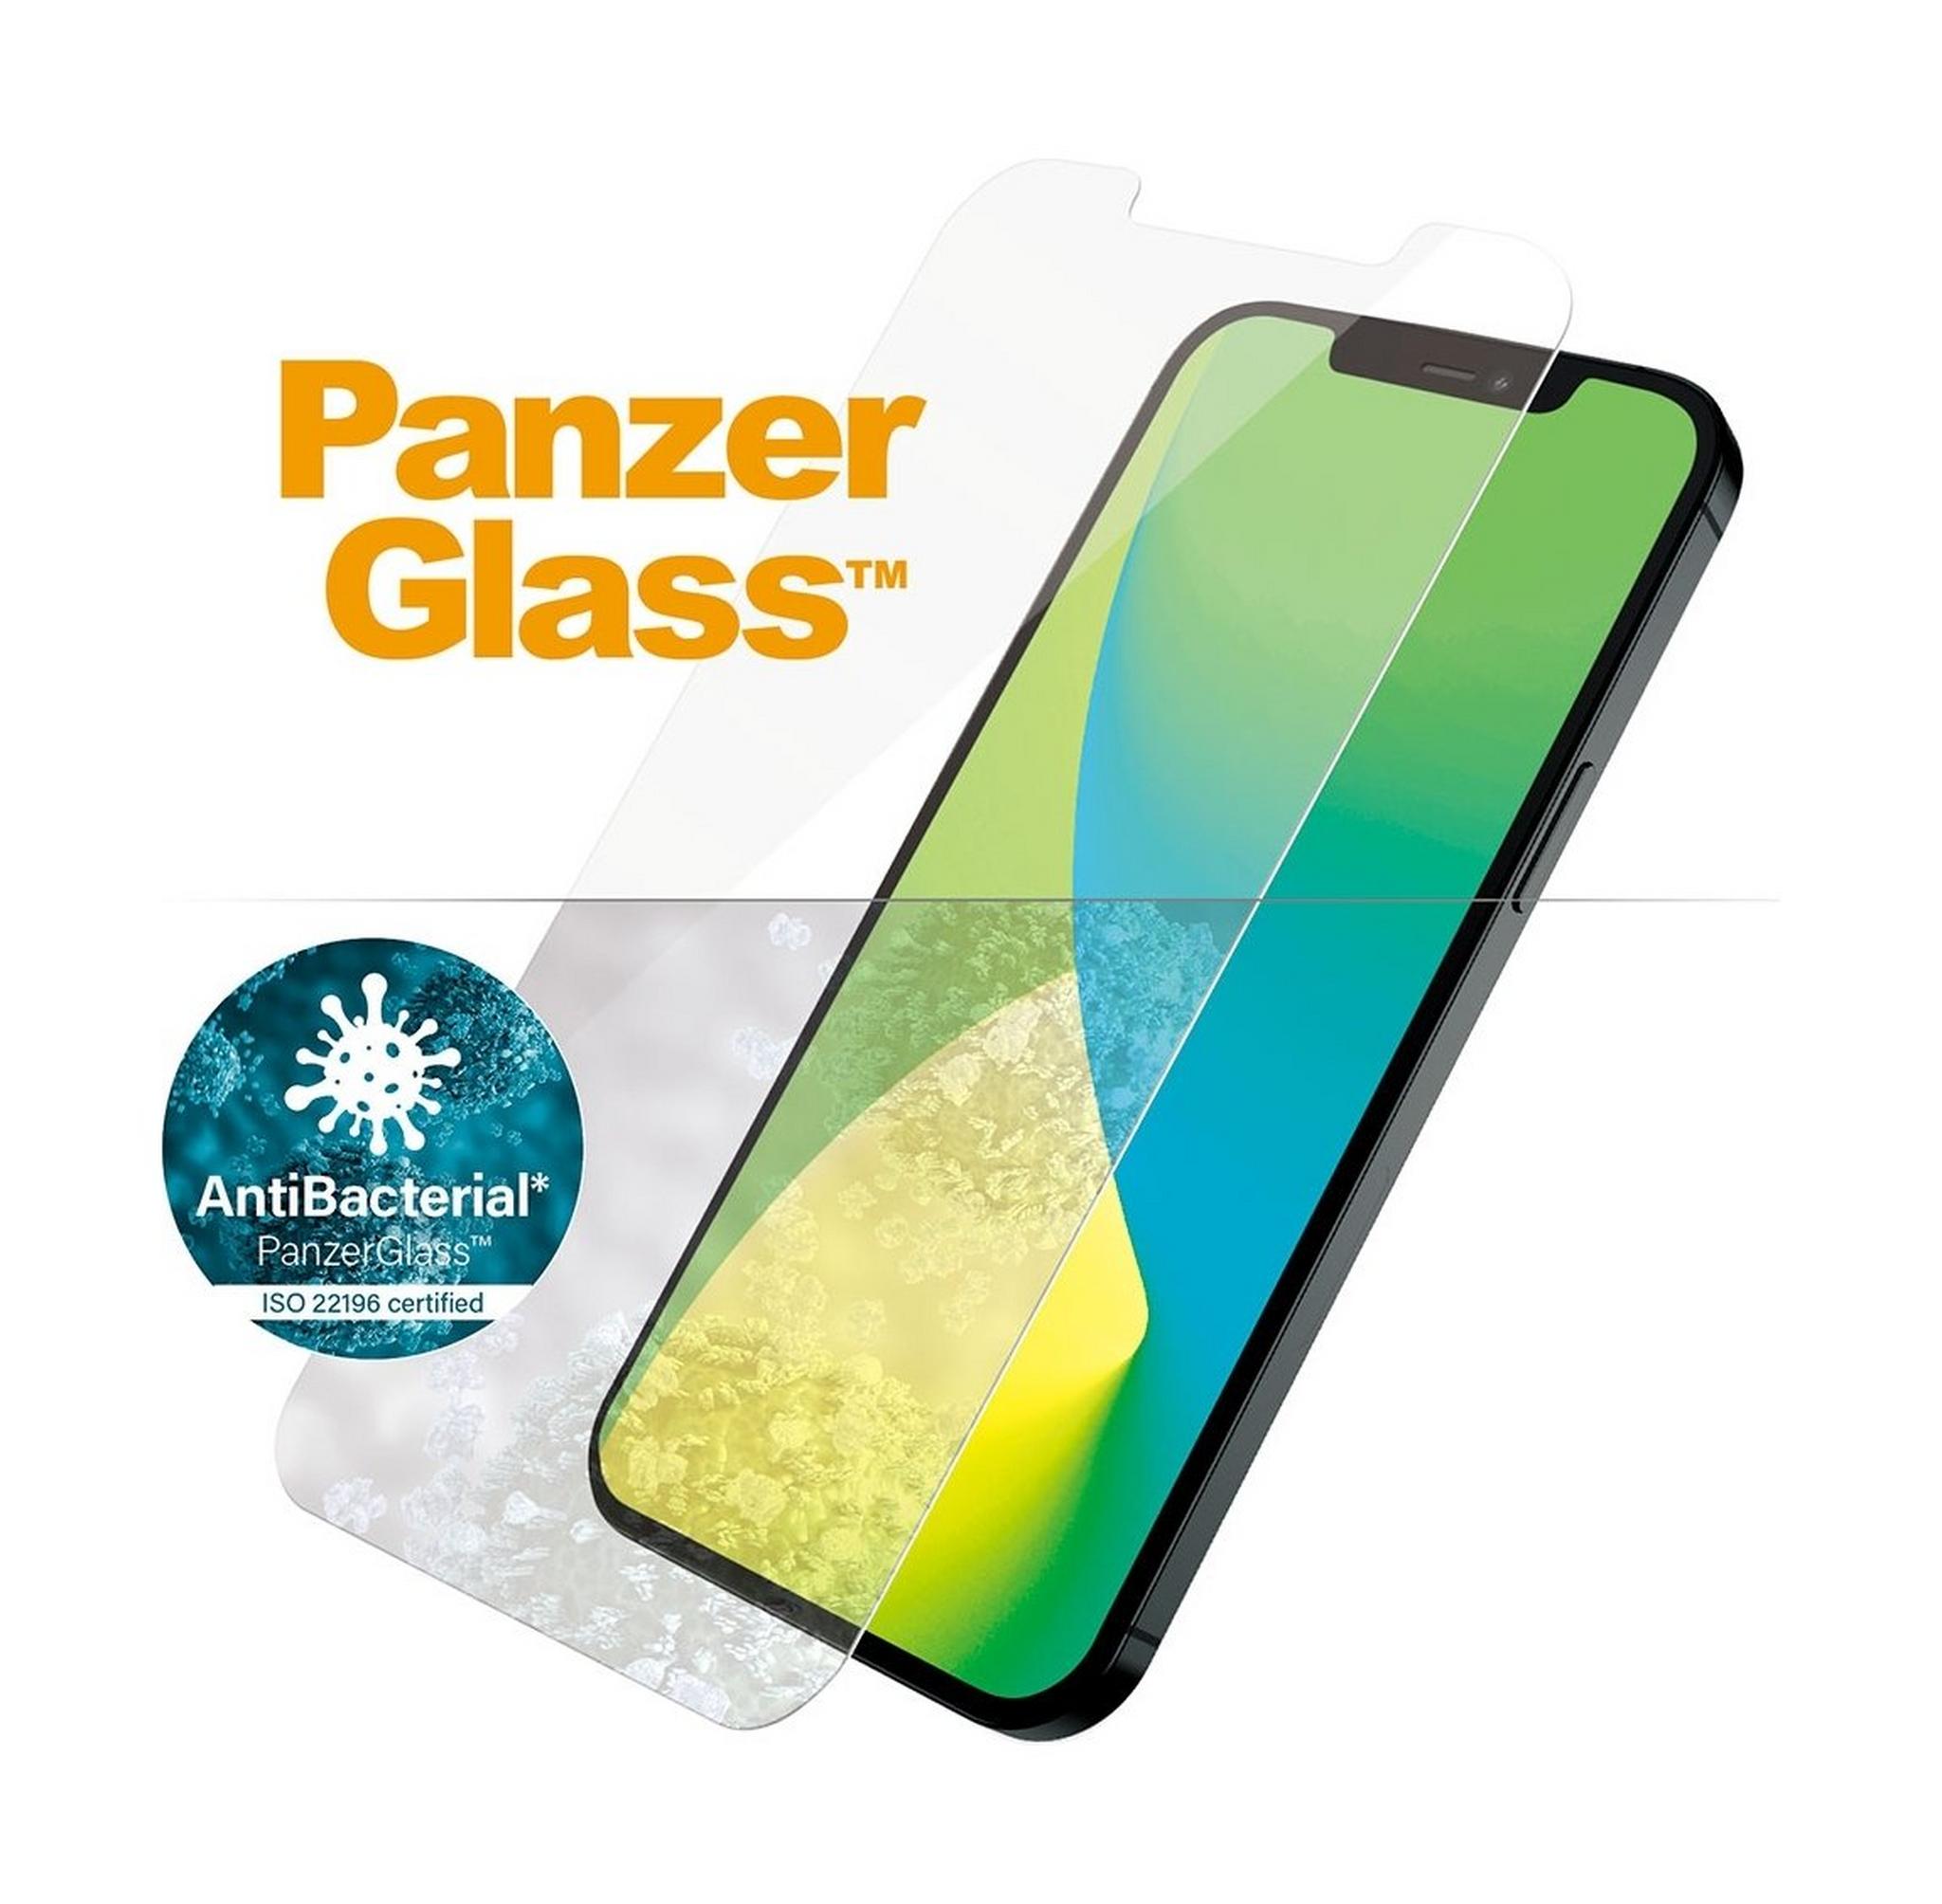 واقي الشاشة الزجاجي لآيفون 12 ميني من بانزر جلاز (2707) - شفاف